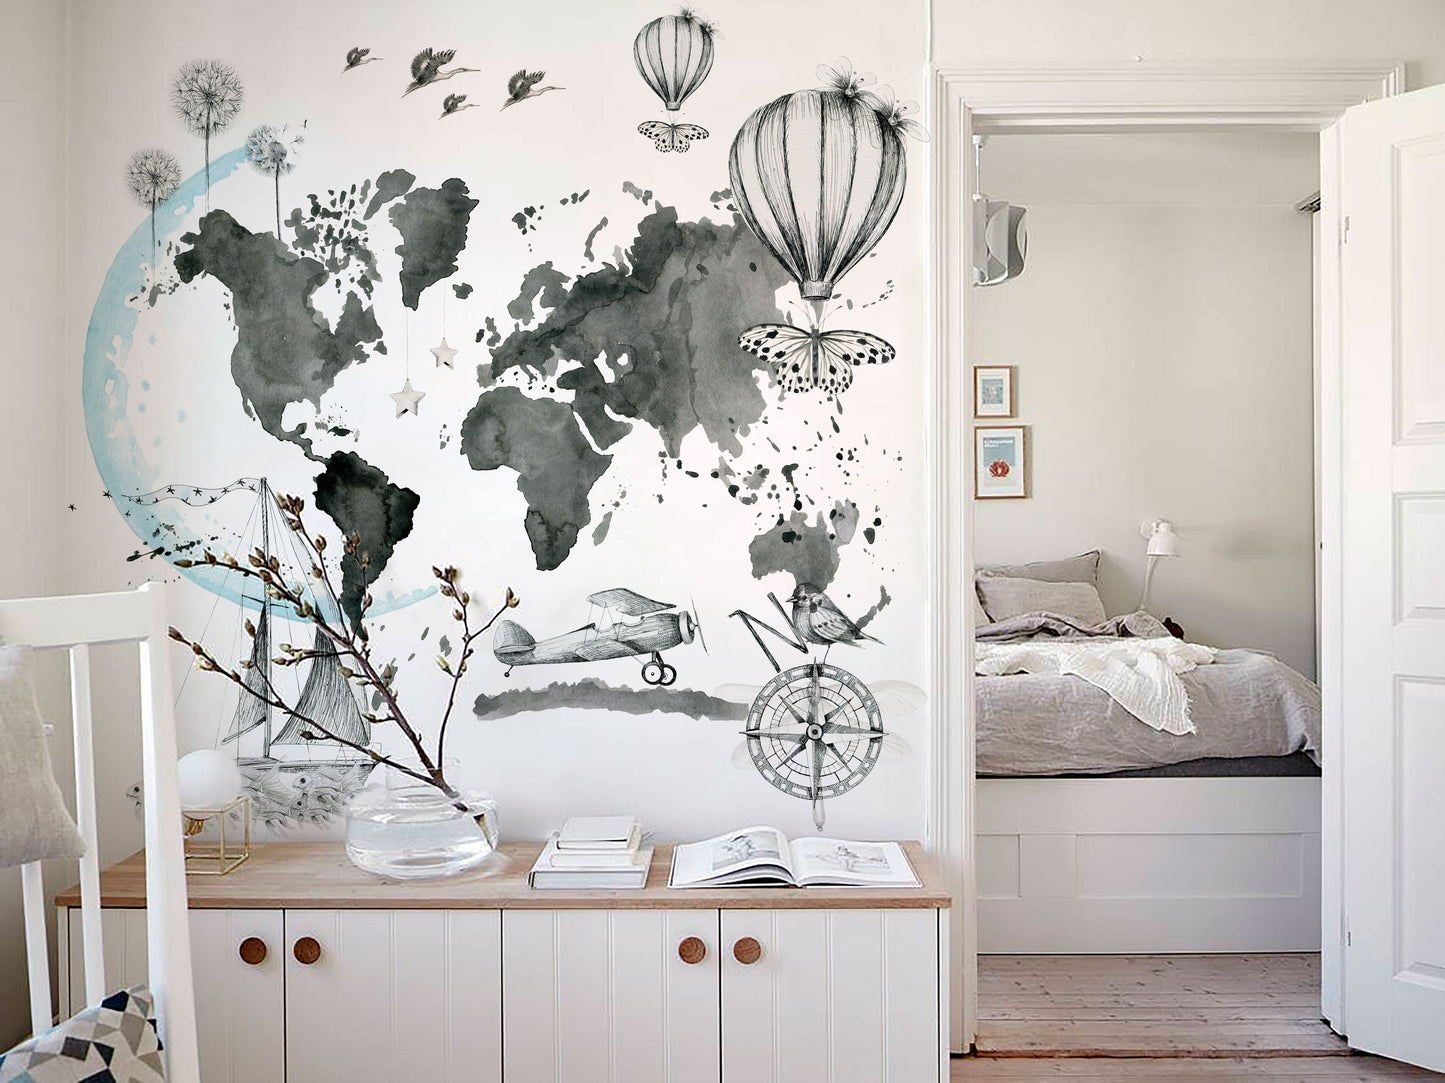 MAPA MUNDI IMAGINE Mural de papel pintado